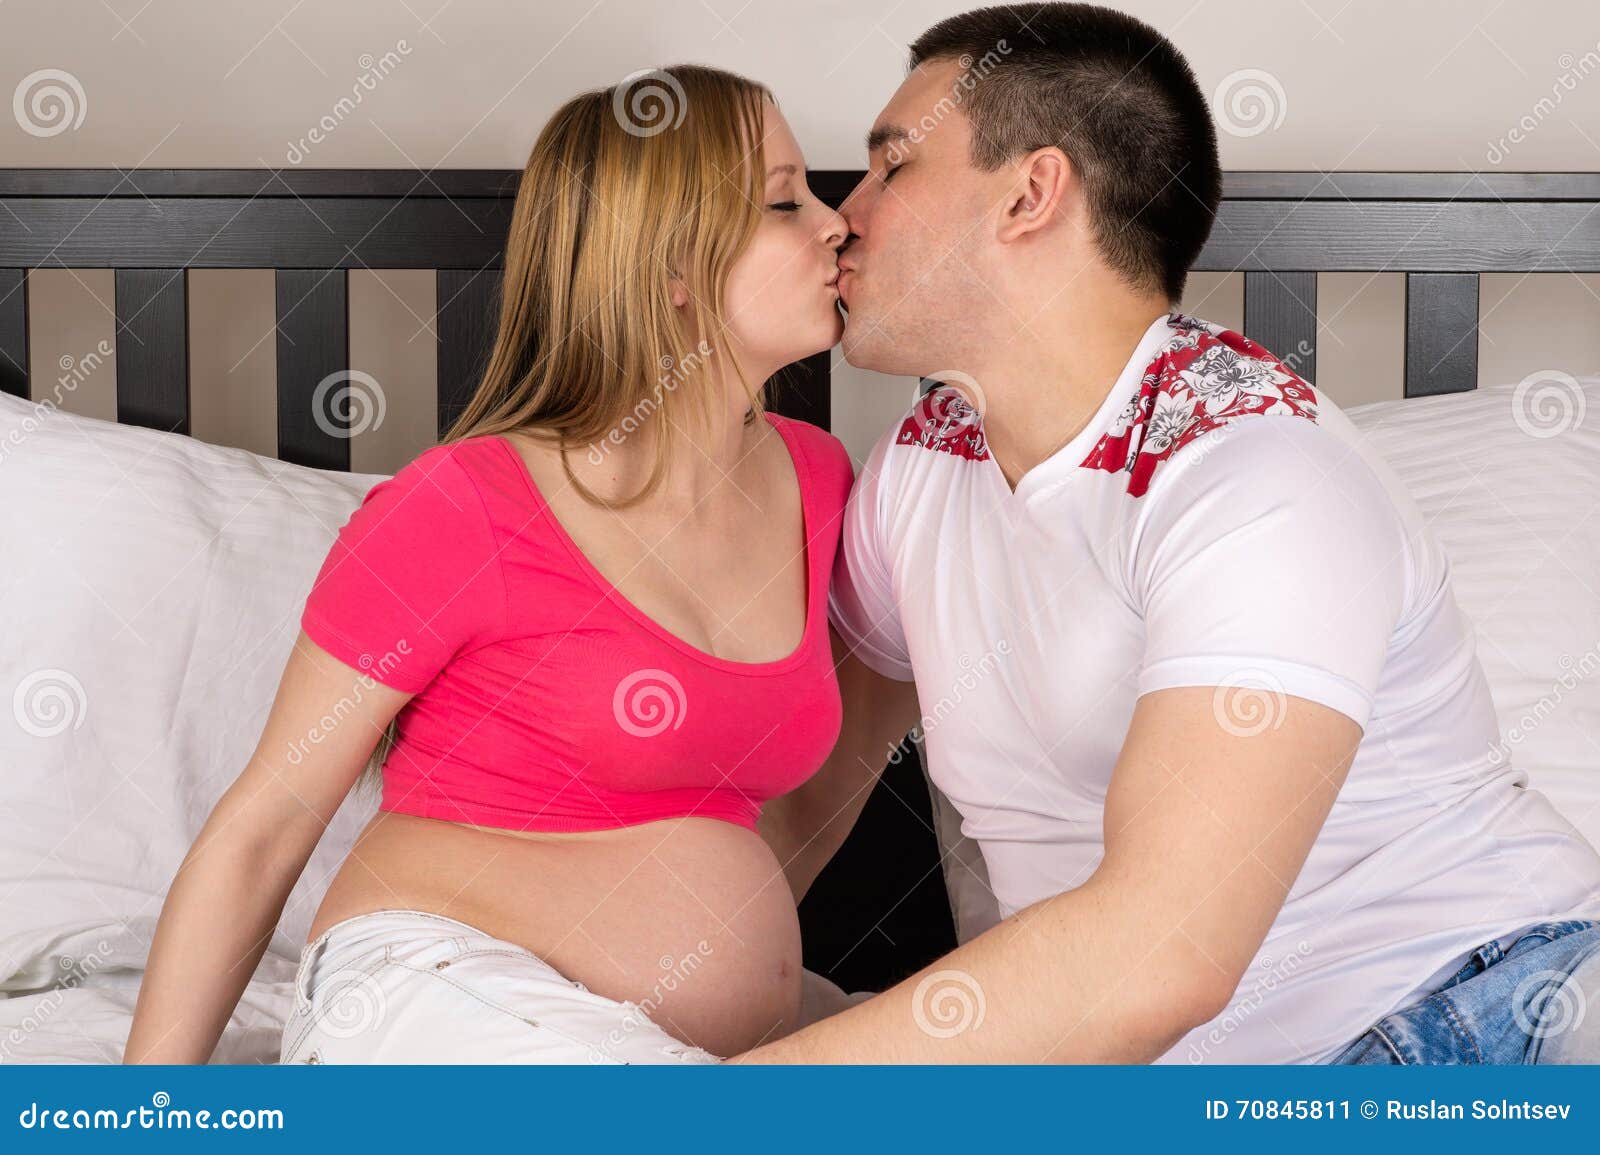 Дяденька тетенька целуются. Поцелуй беременной. Поцелуй в живот беременной. Целовашки с беременной.